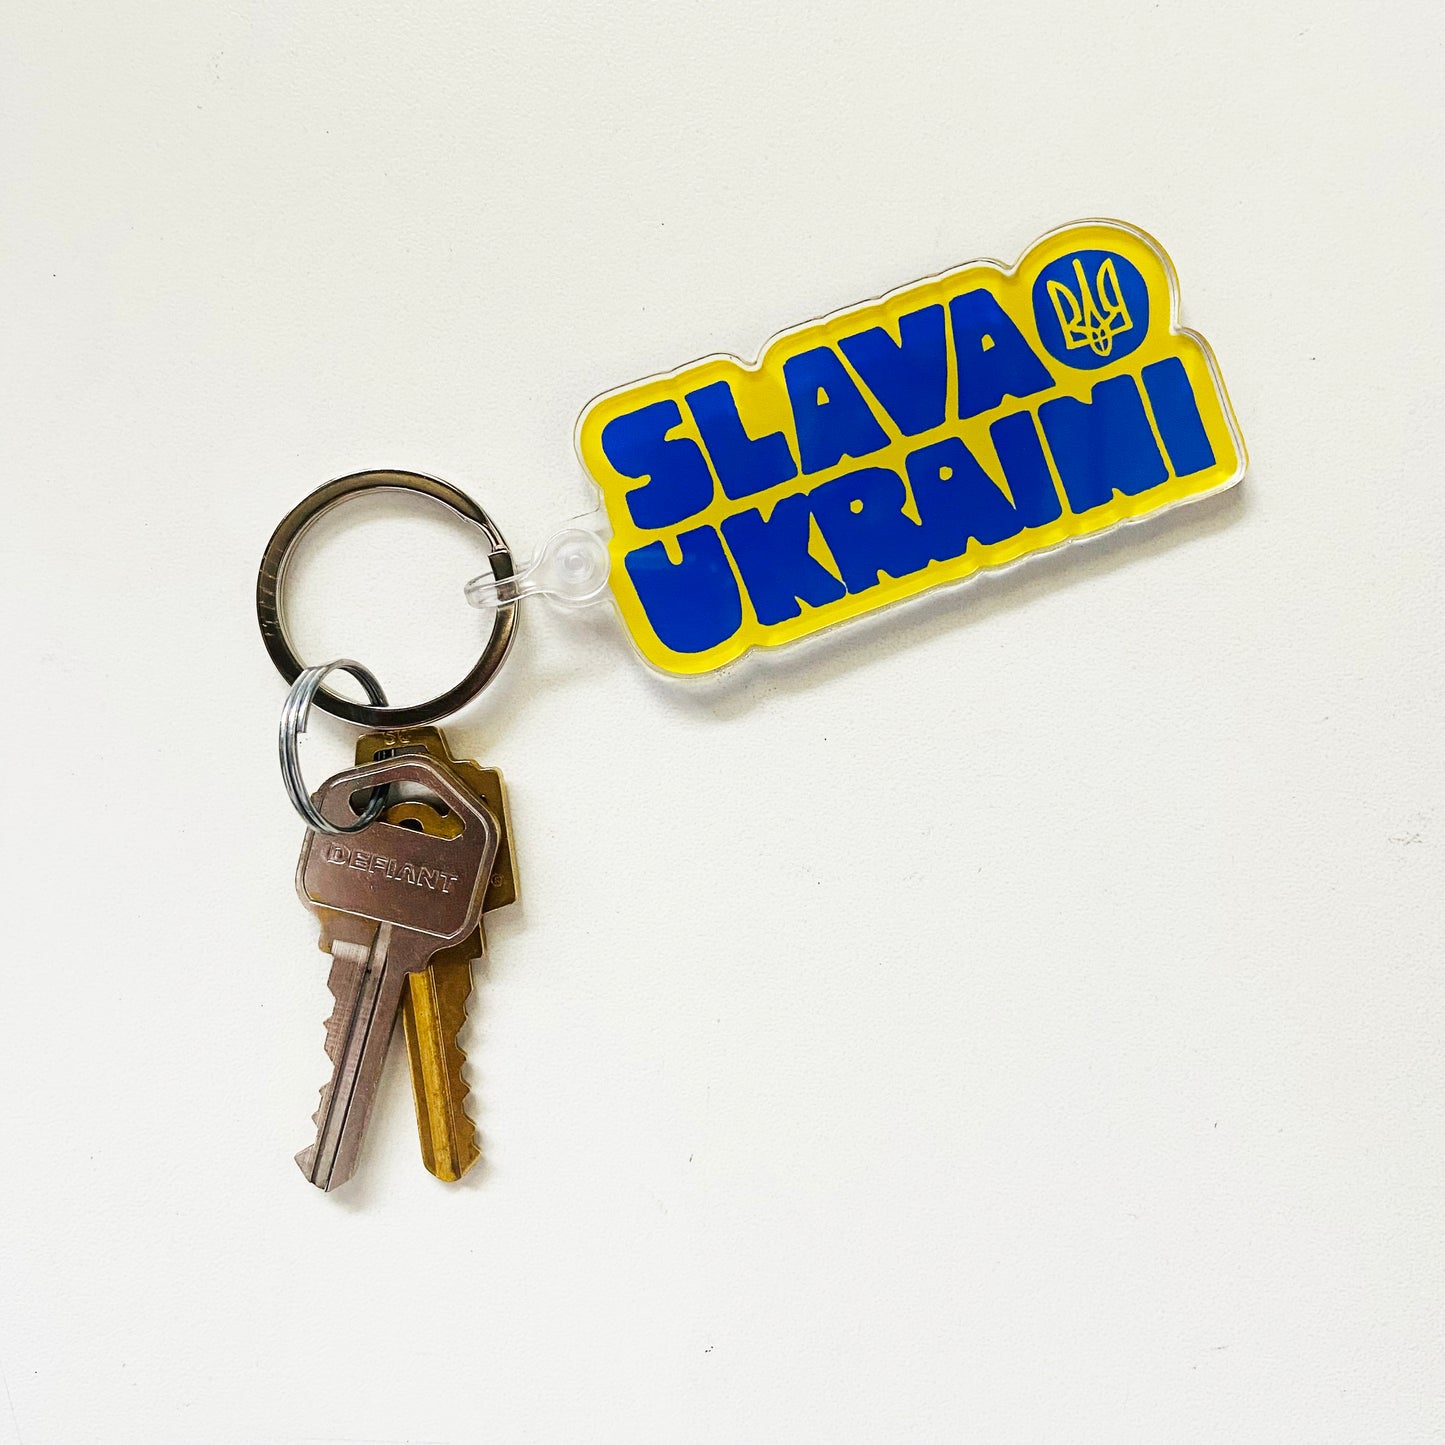 Ukraine Keychains - Limited Edition - Slava Ukraini or FCK PTN